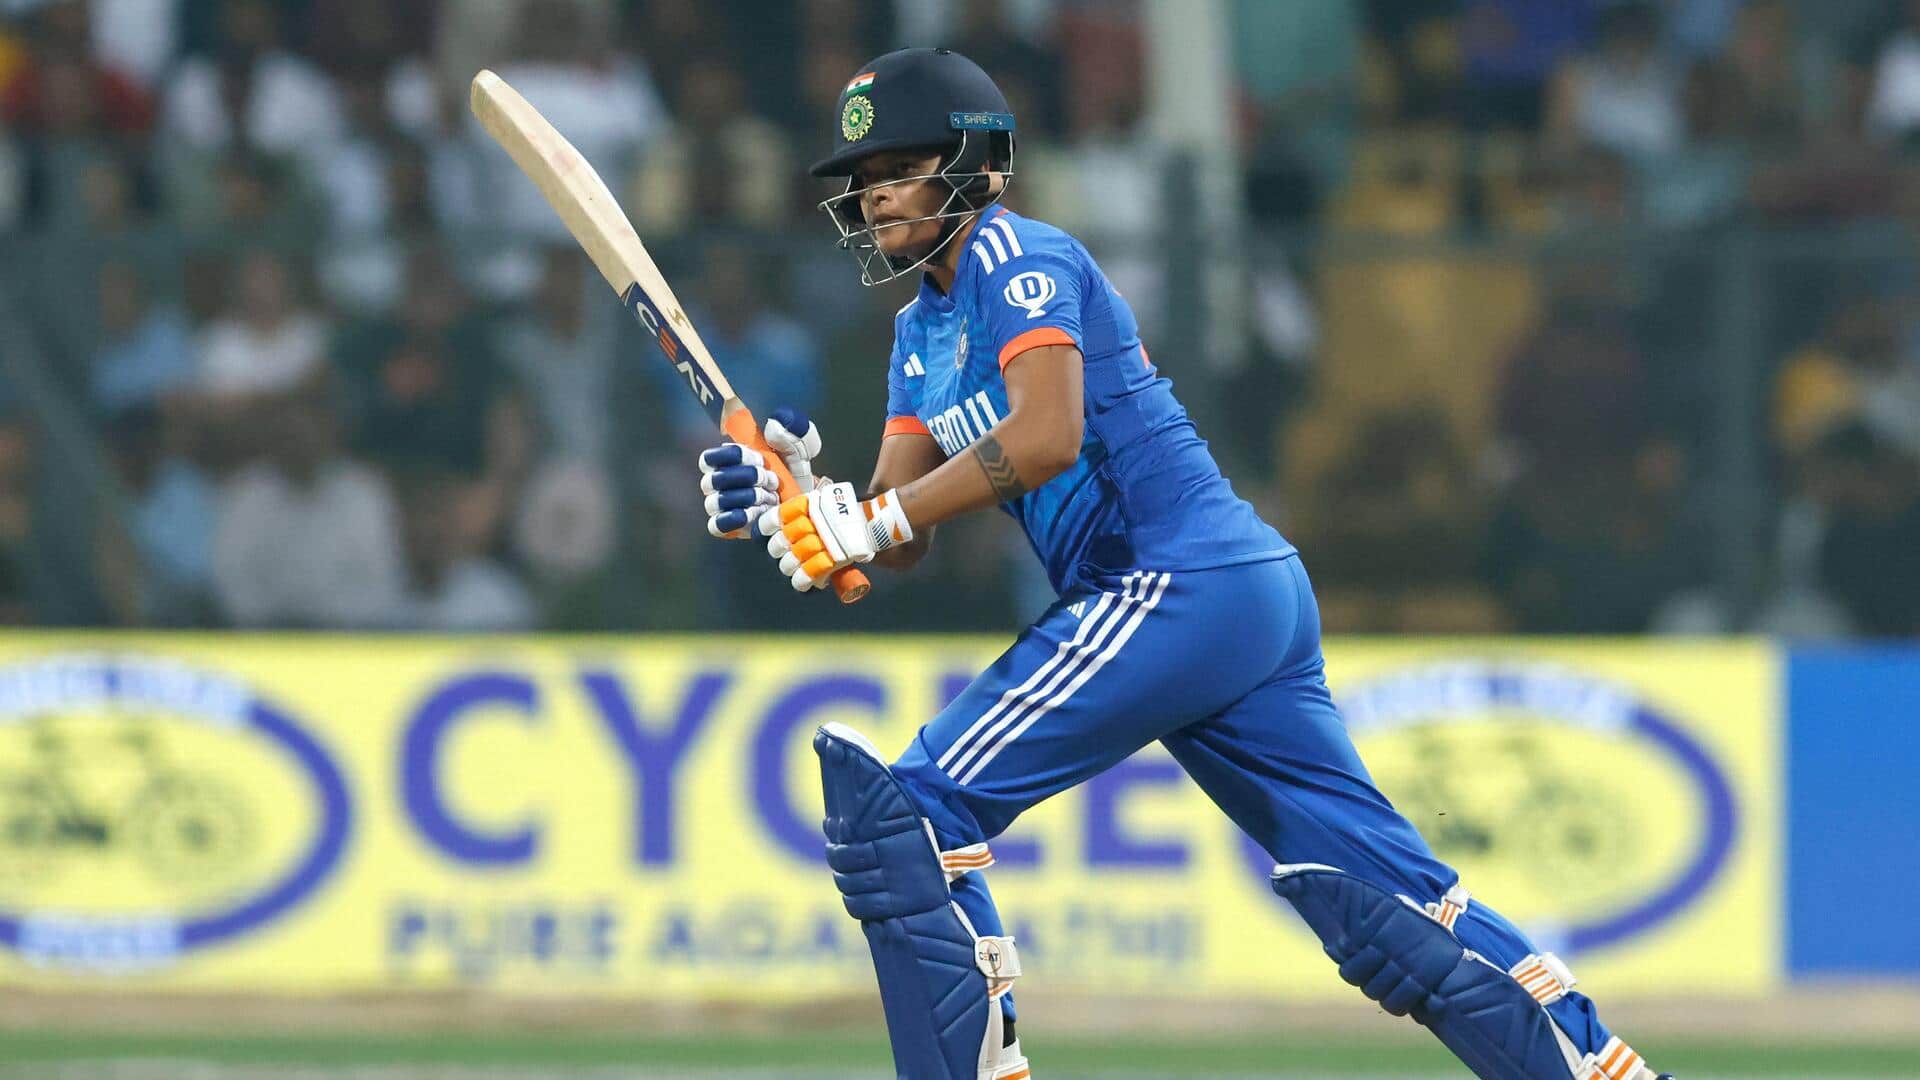 शेफाली वर्मा ने लगाया टी-20 अंतरराष्ट्रीय करियर का 7वां अर्धशतक, 1,500 रन भी पूरे किए